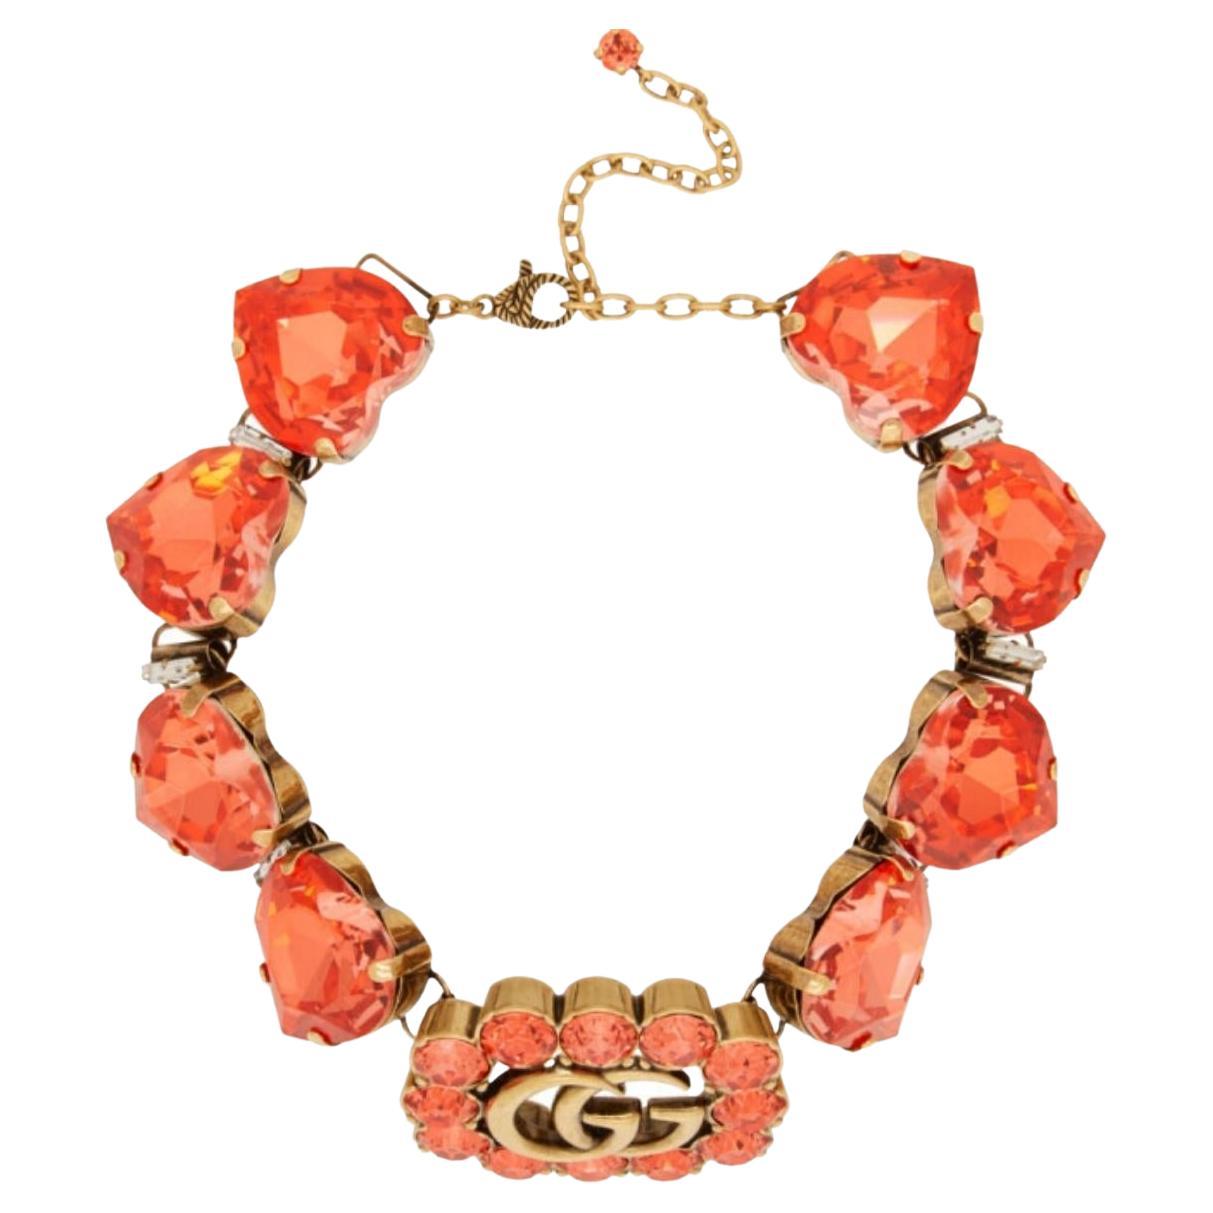 Emblème de la Maison, les initiales de son fondateur Guccio Gucci définissent ce collier, orné de cristaux en forme de cœur. Pour ajouter une touche de raffinement, des cristaux étincelants encadrent le logo réalisé en métal avec une finition or